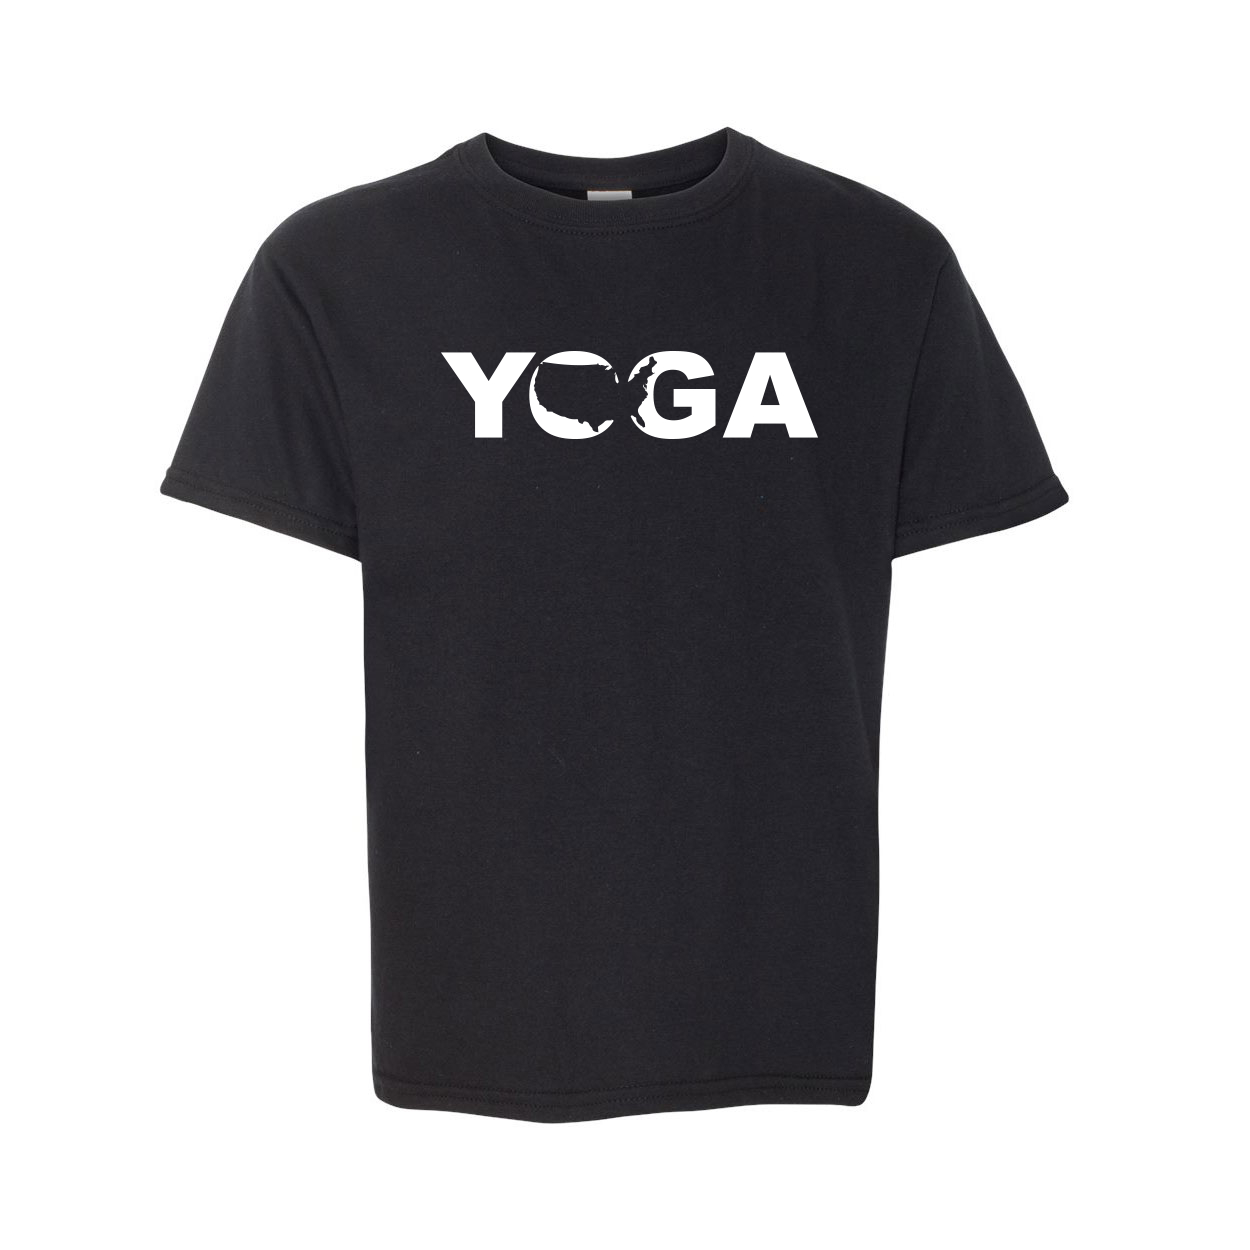 Yoga United States Classic Youth T-Shirt Black (White Logo)